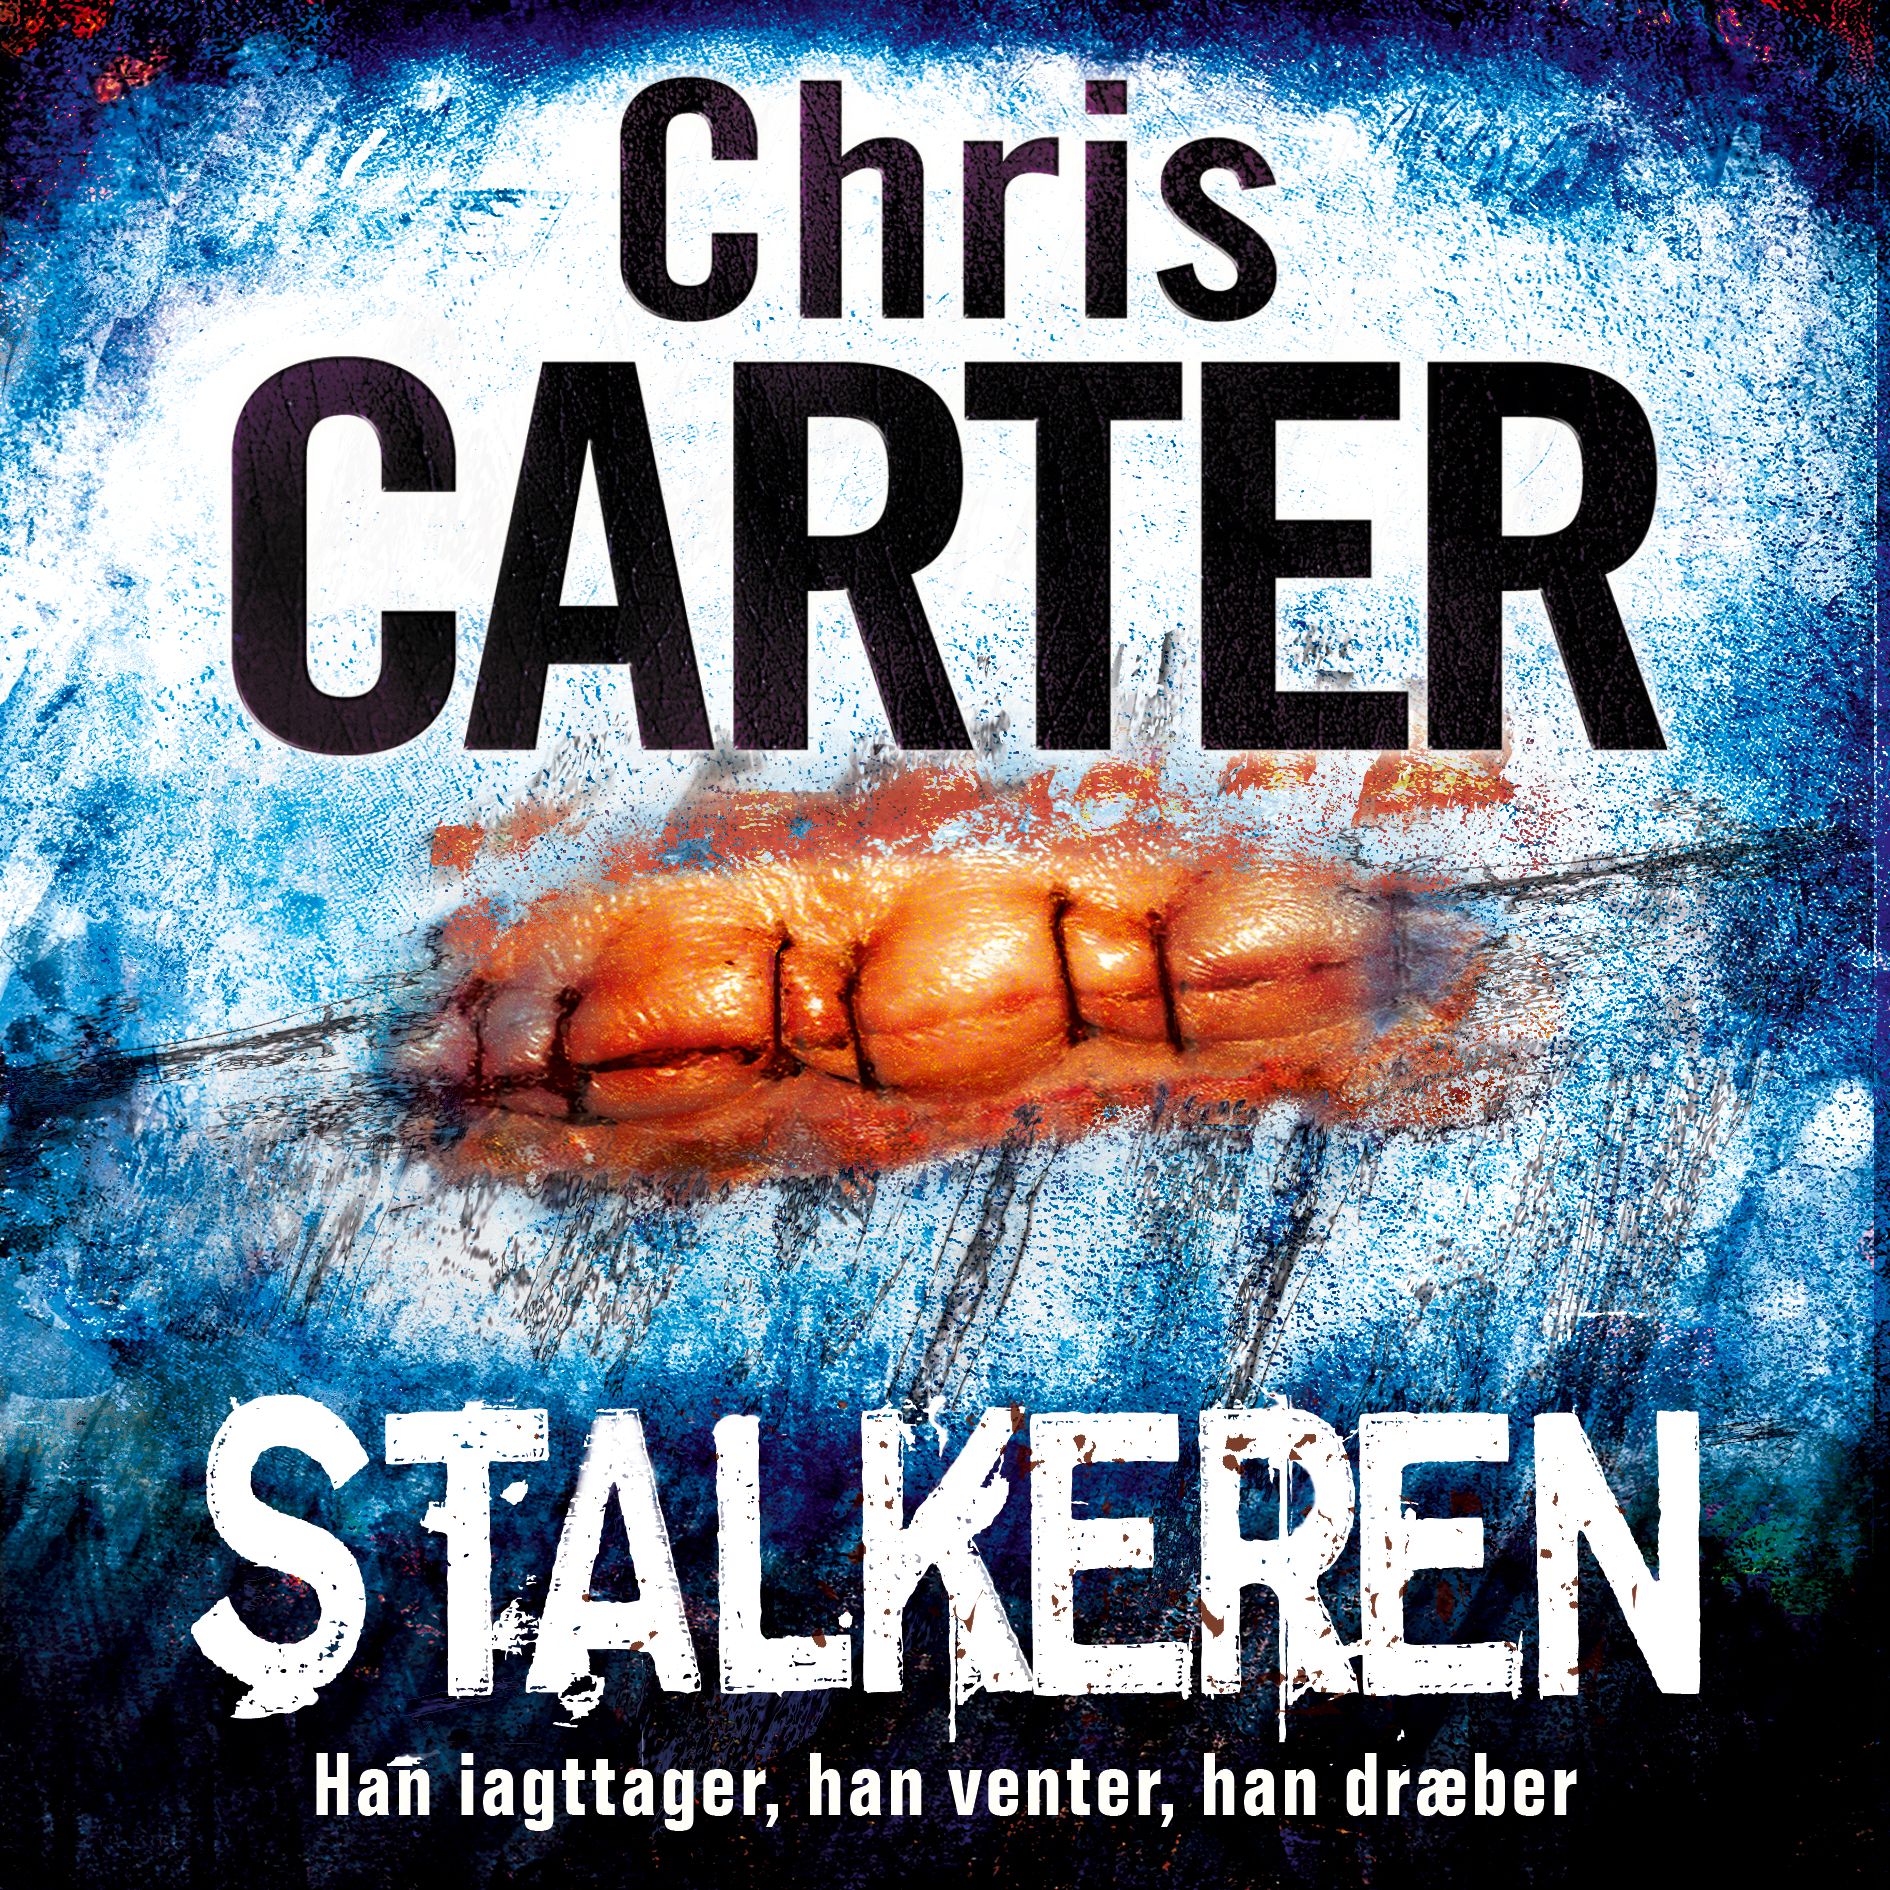 Stalkeren, ljudbok av Chris Carter